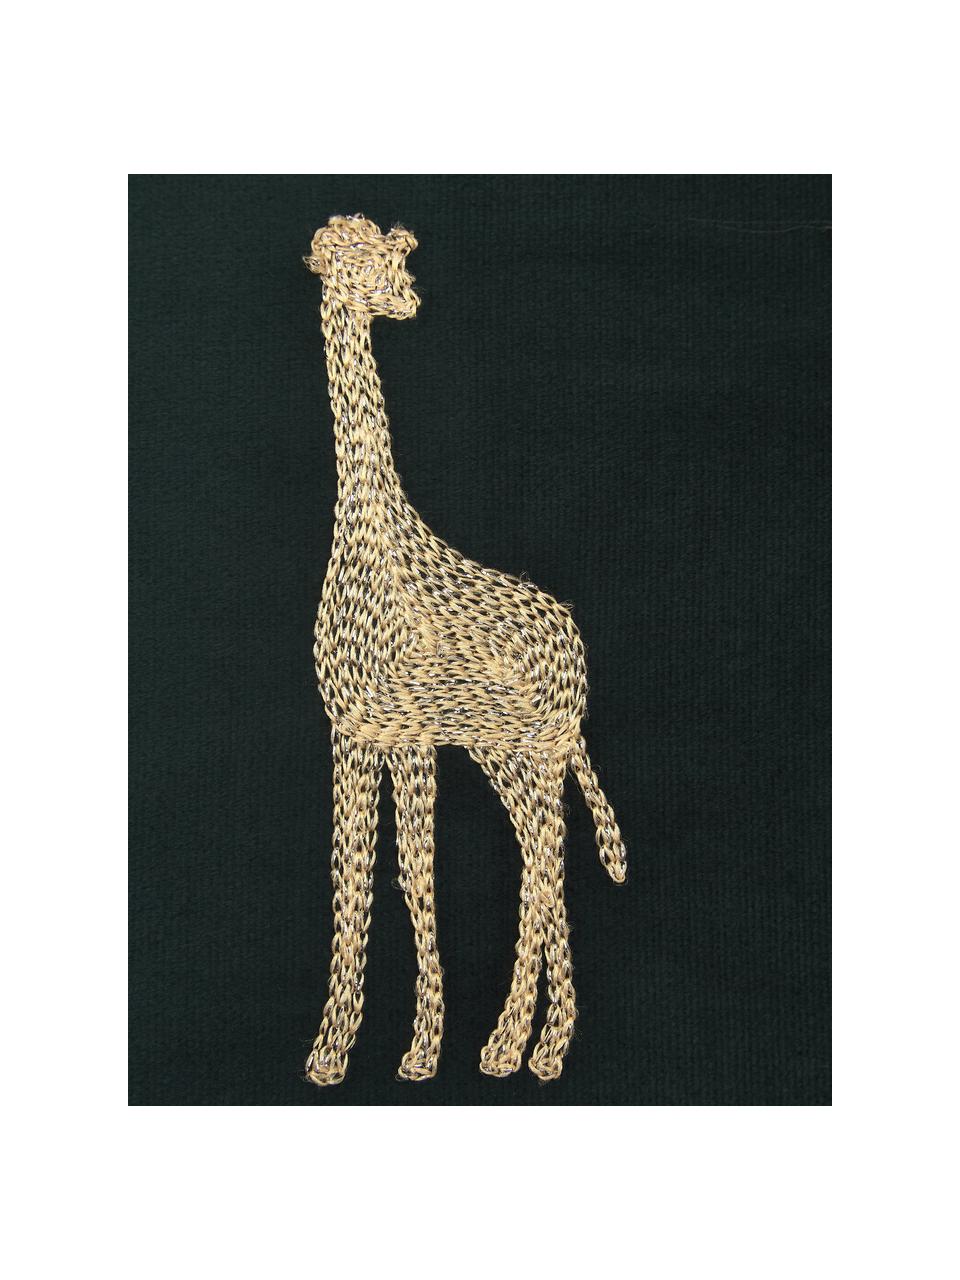 Besticktes Samt-Kissen Giraffe in Grün/Gold, mit Inlett, 100% Samt (Polyester), Grün, Goldfarben, 45 x 45 cm